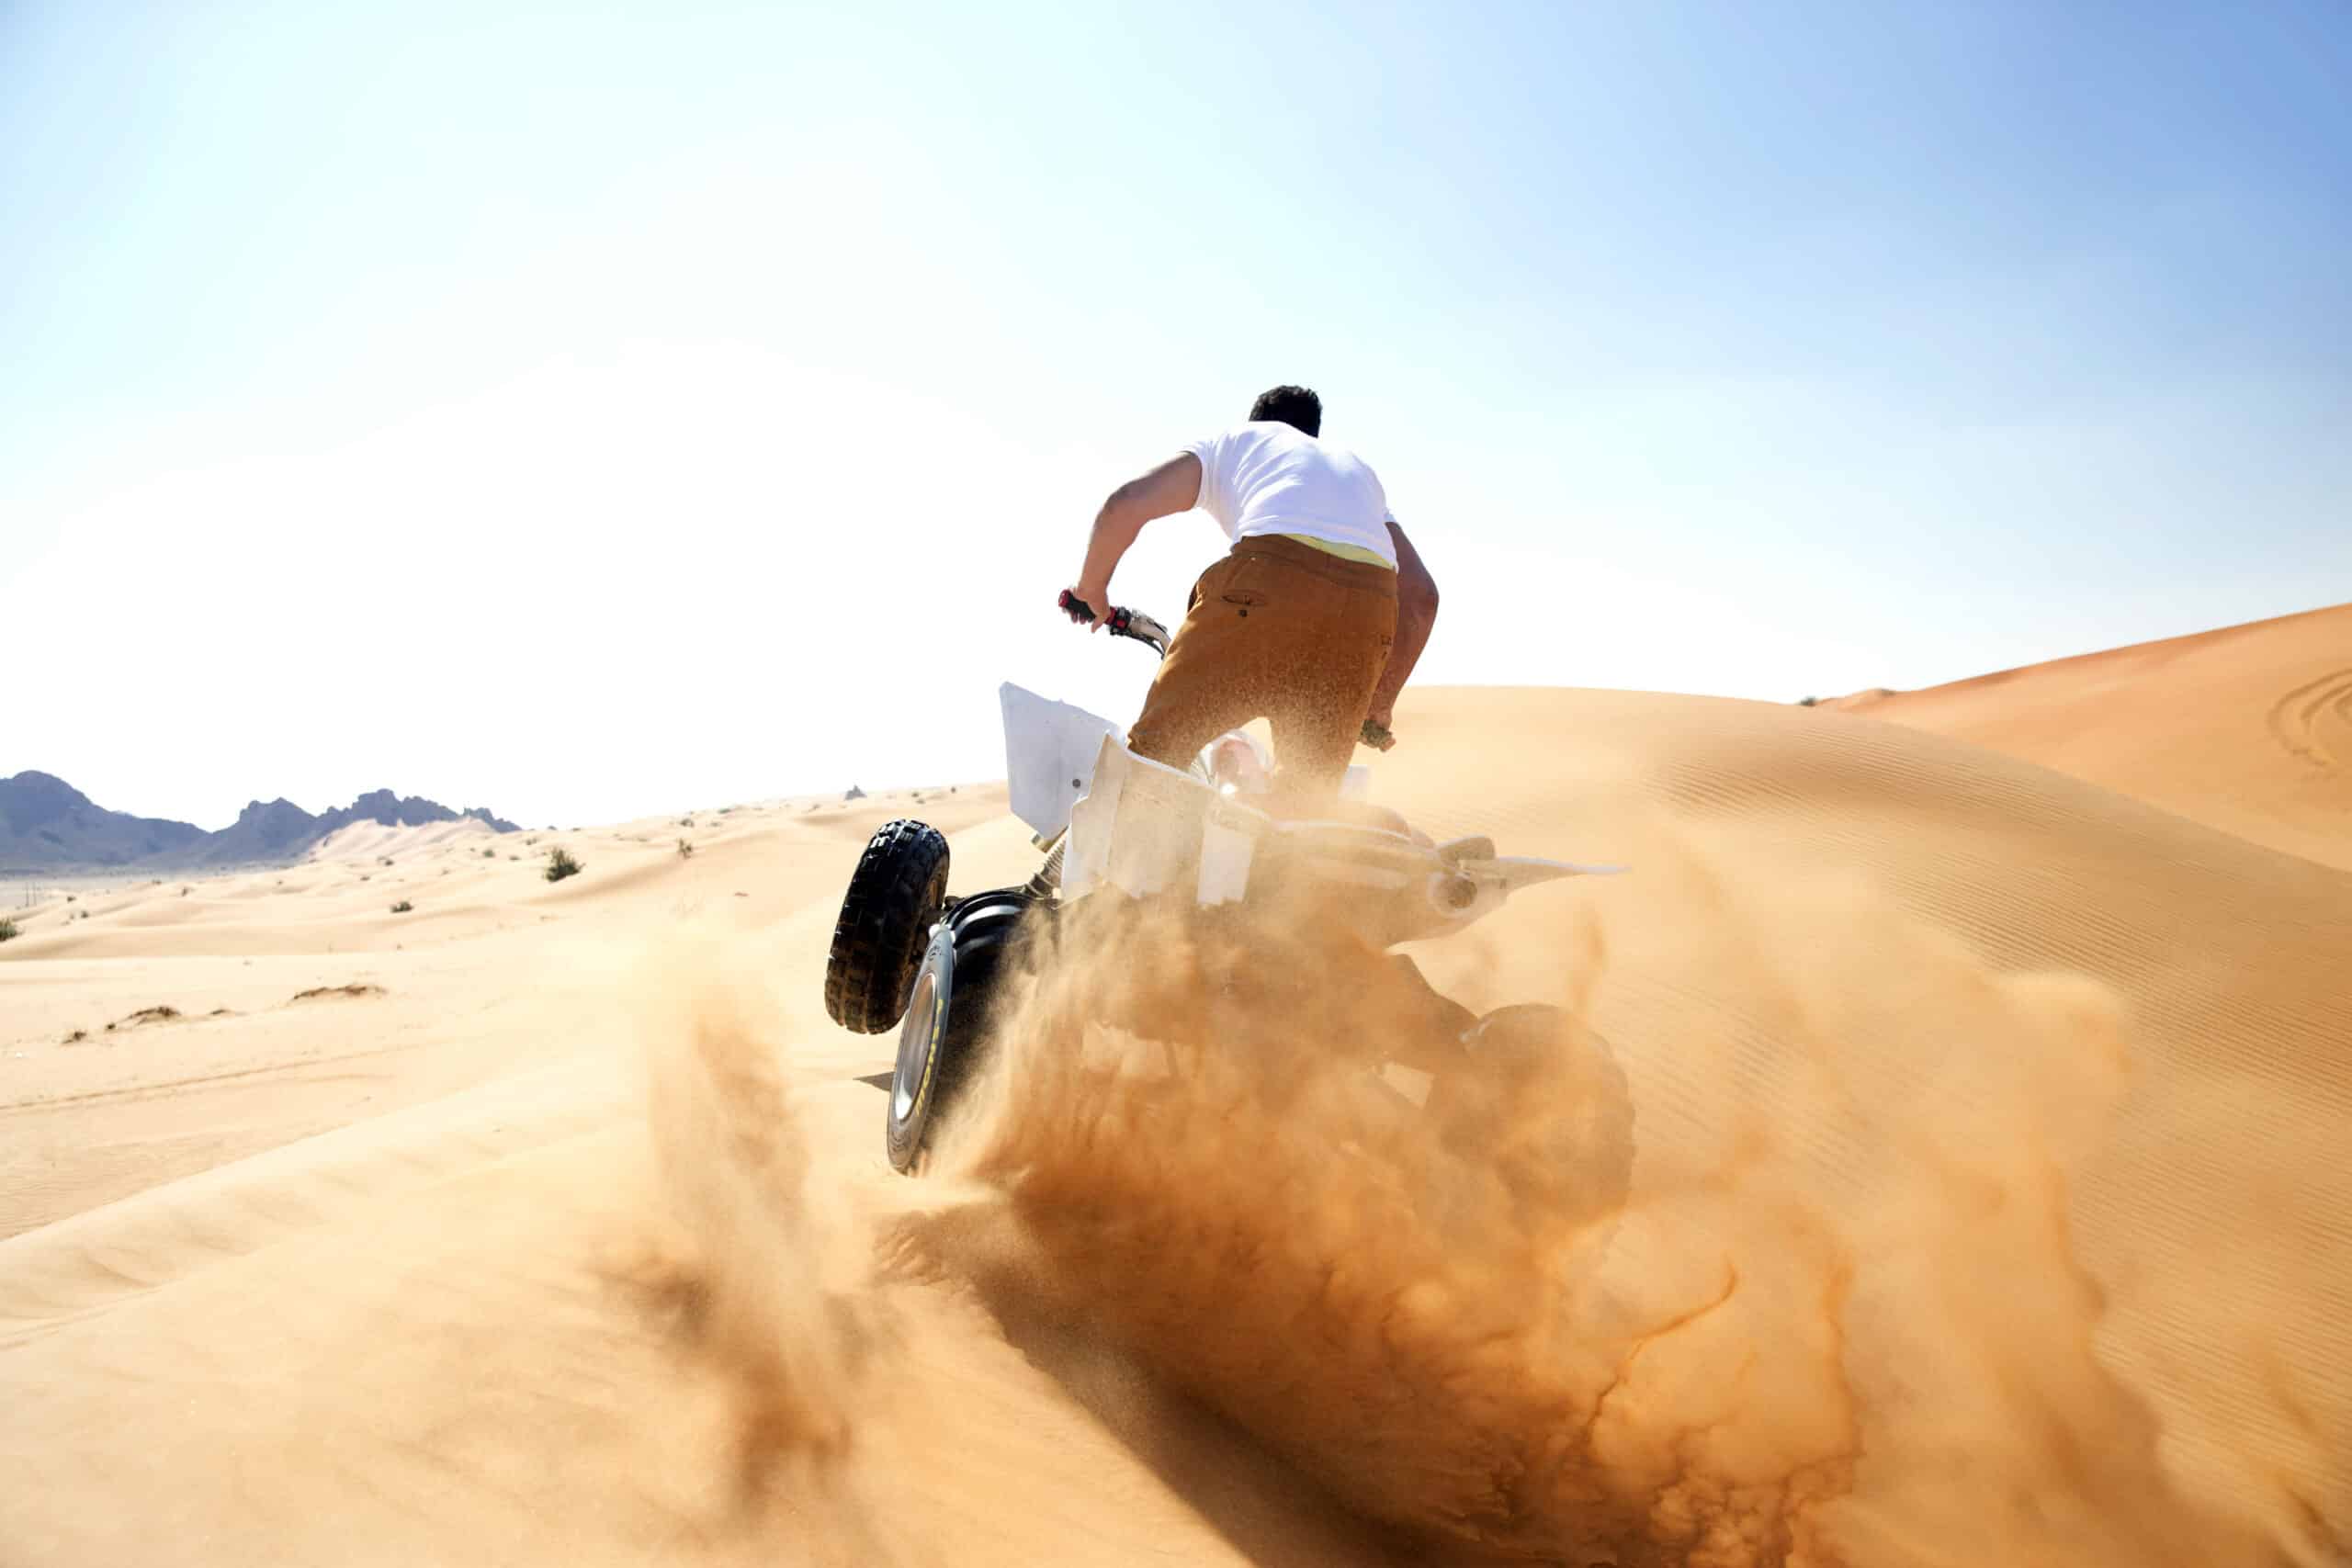 Ein Motorradfahrer fährt mit einem Dirtbike unter einem klaren blauen Himmel in einer Wüstenlandschaft eine Sanddüne hinauf und wirbelt dabei eine Sandwolke auf. © Fotografie Tomas Rodriguez